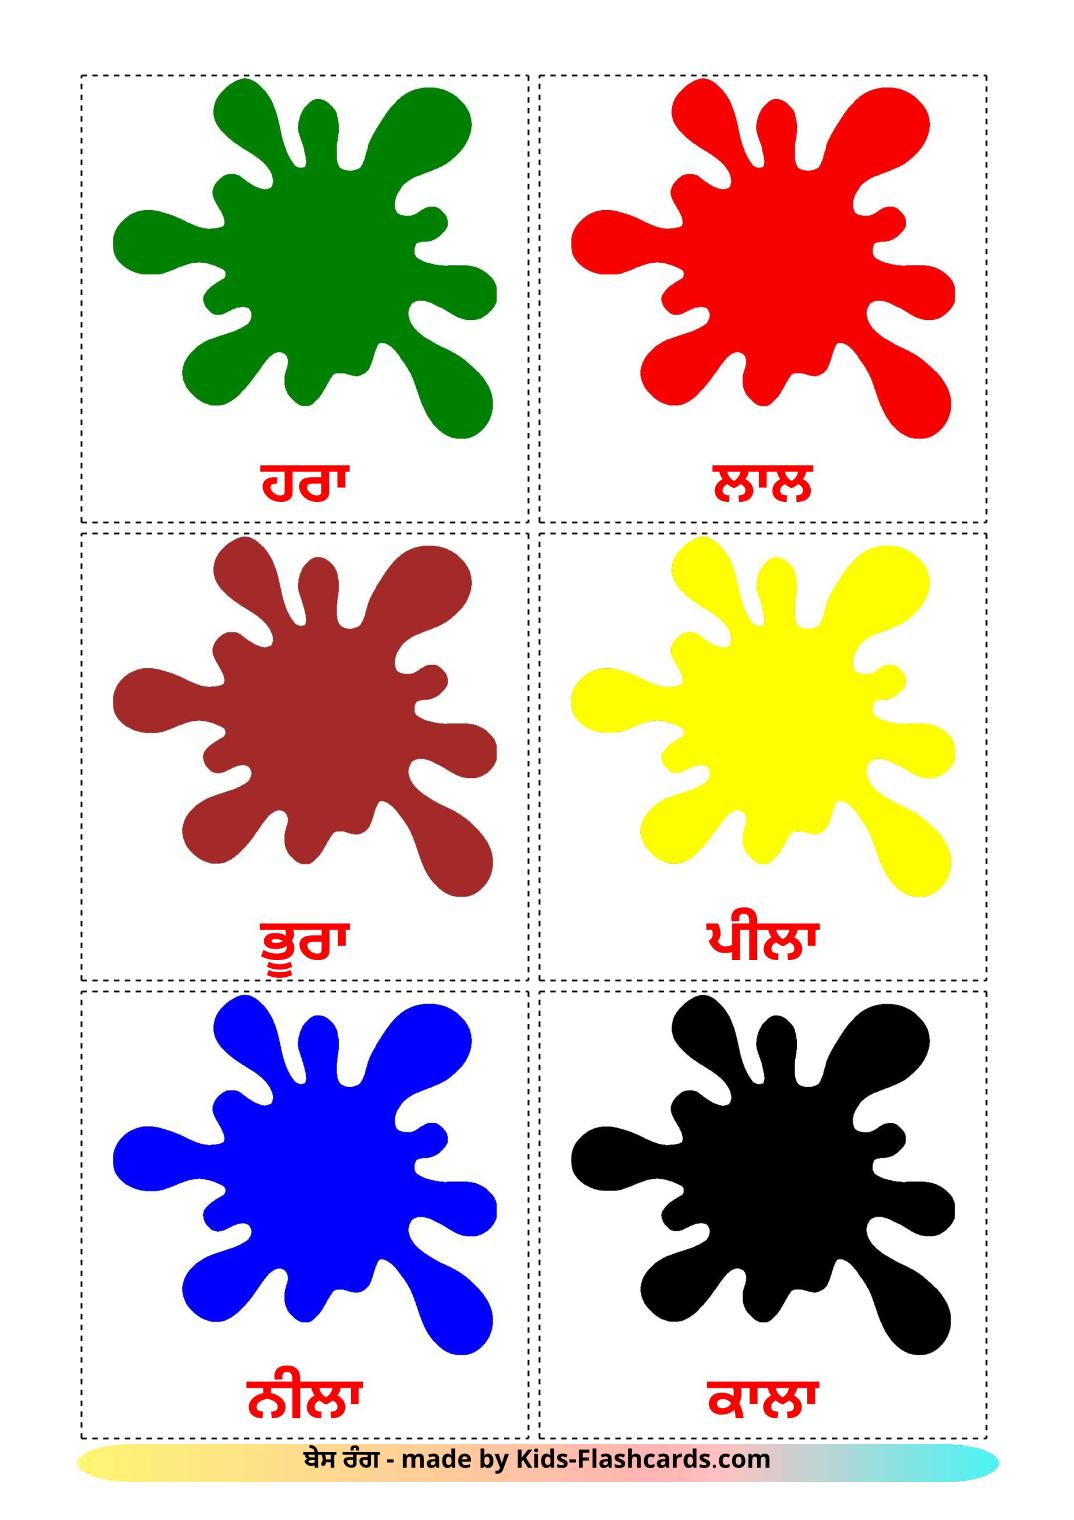 Base colors - 12 Free Printable punjabi(Gurmukhi) Flashcards 